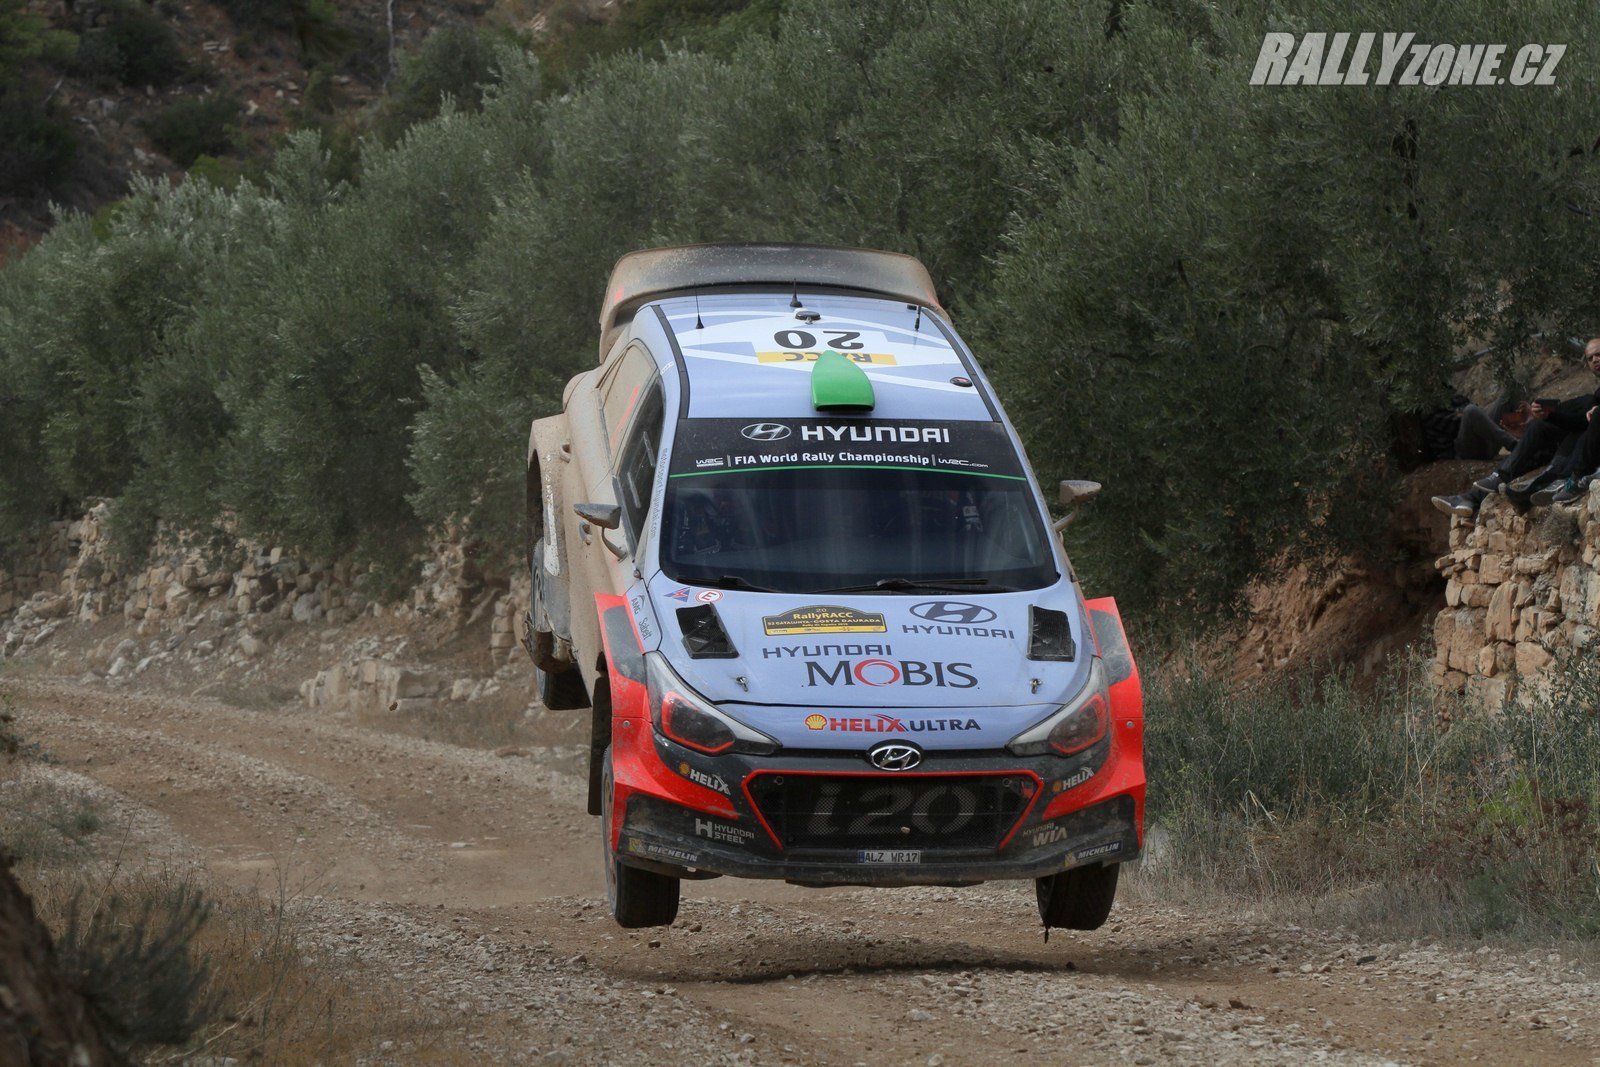 V roce 2016 v Argentině Paddon získal svoje jediné vítězství ve WRC